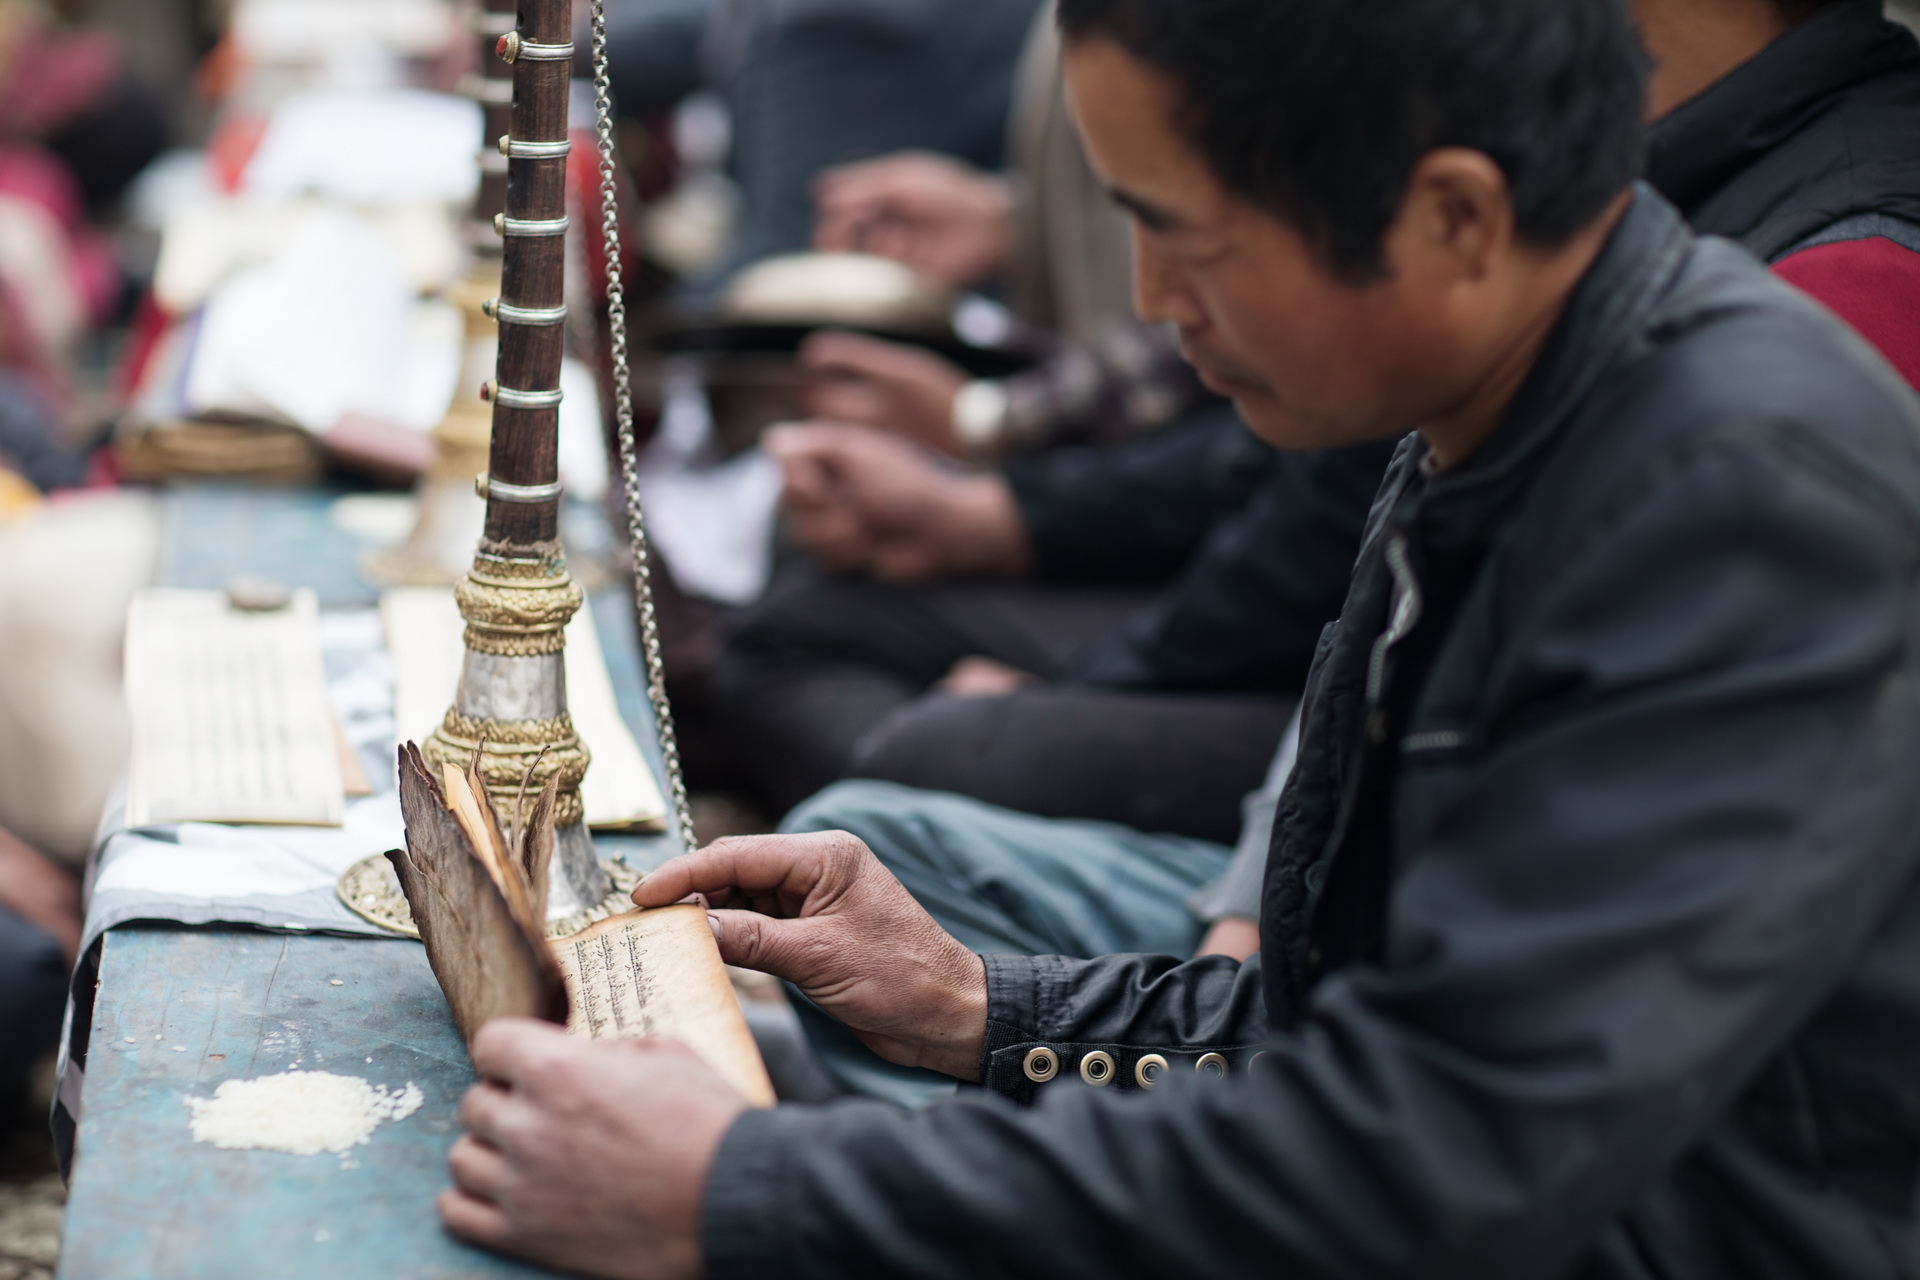 Slavnost uctívání nožů, kmen Yolmo, Nepál - Martina Grmolenská | Planeta lidí